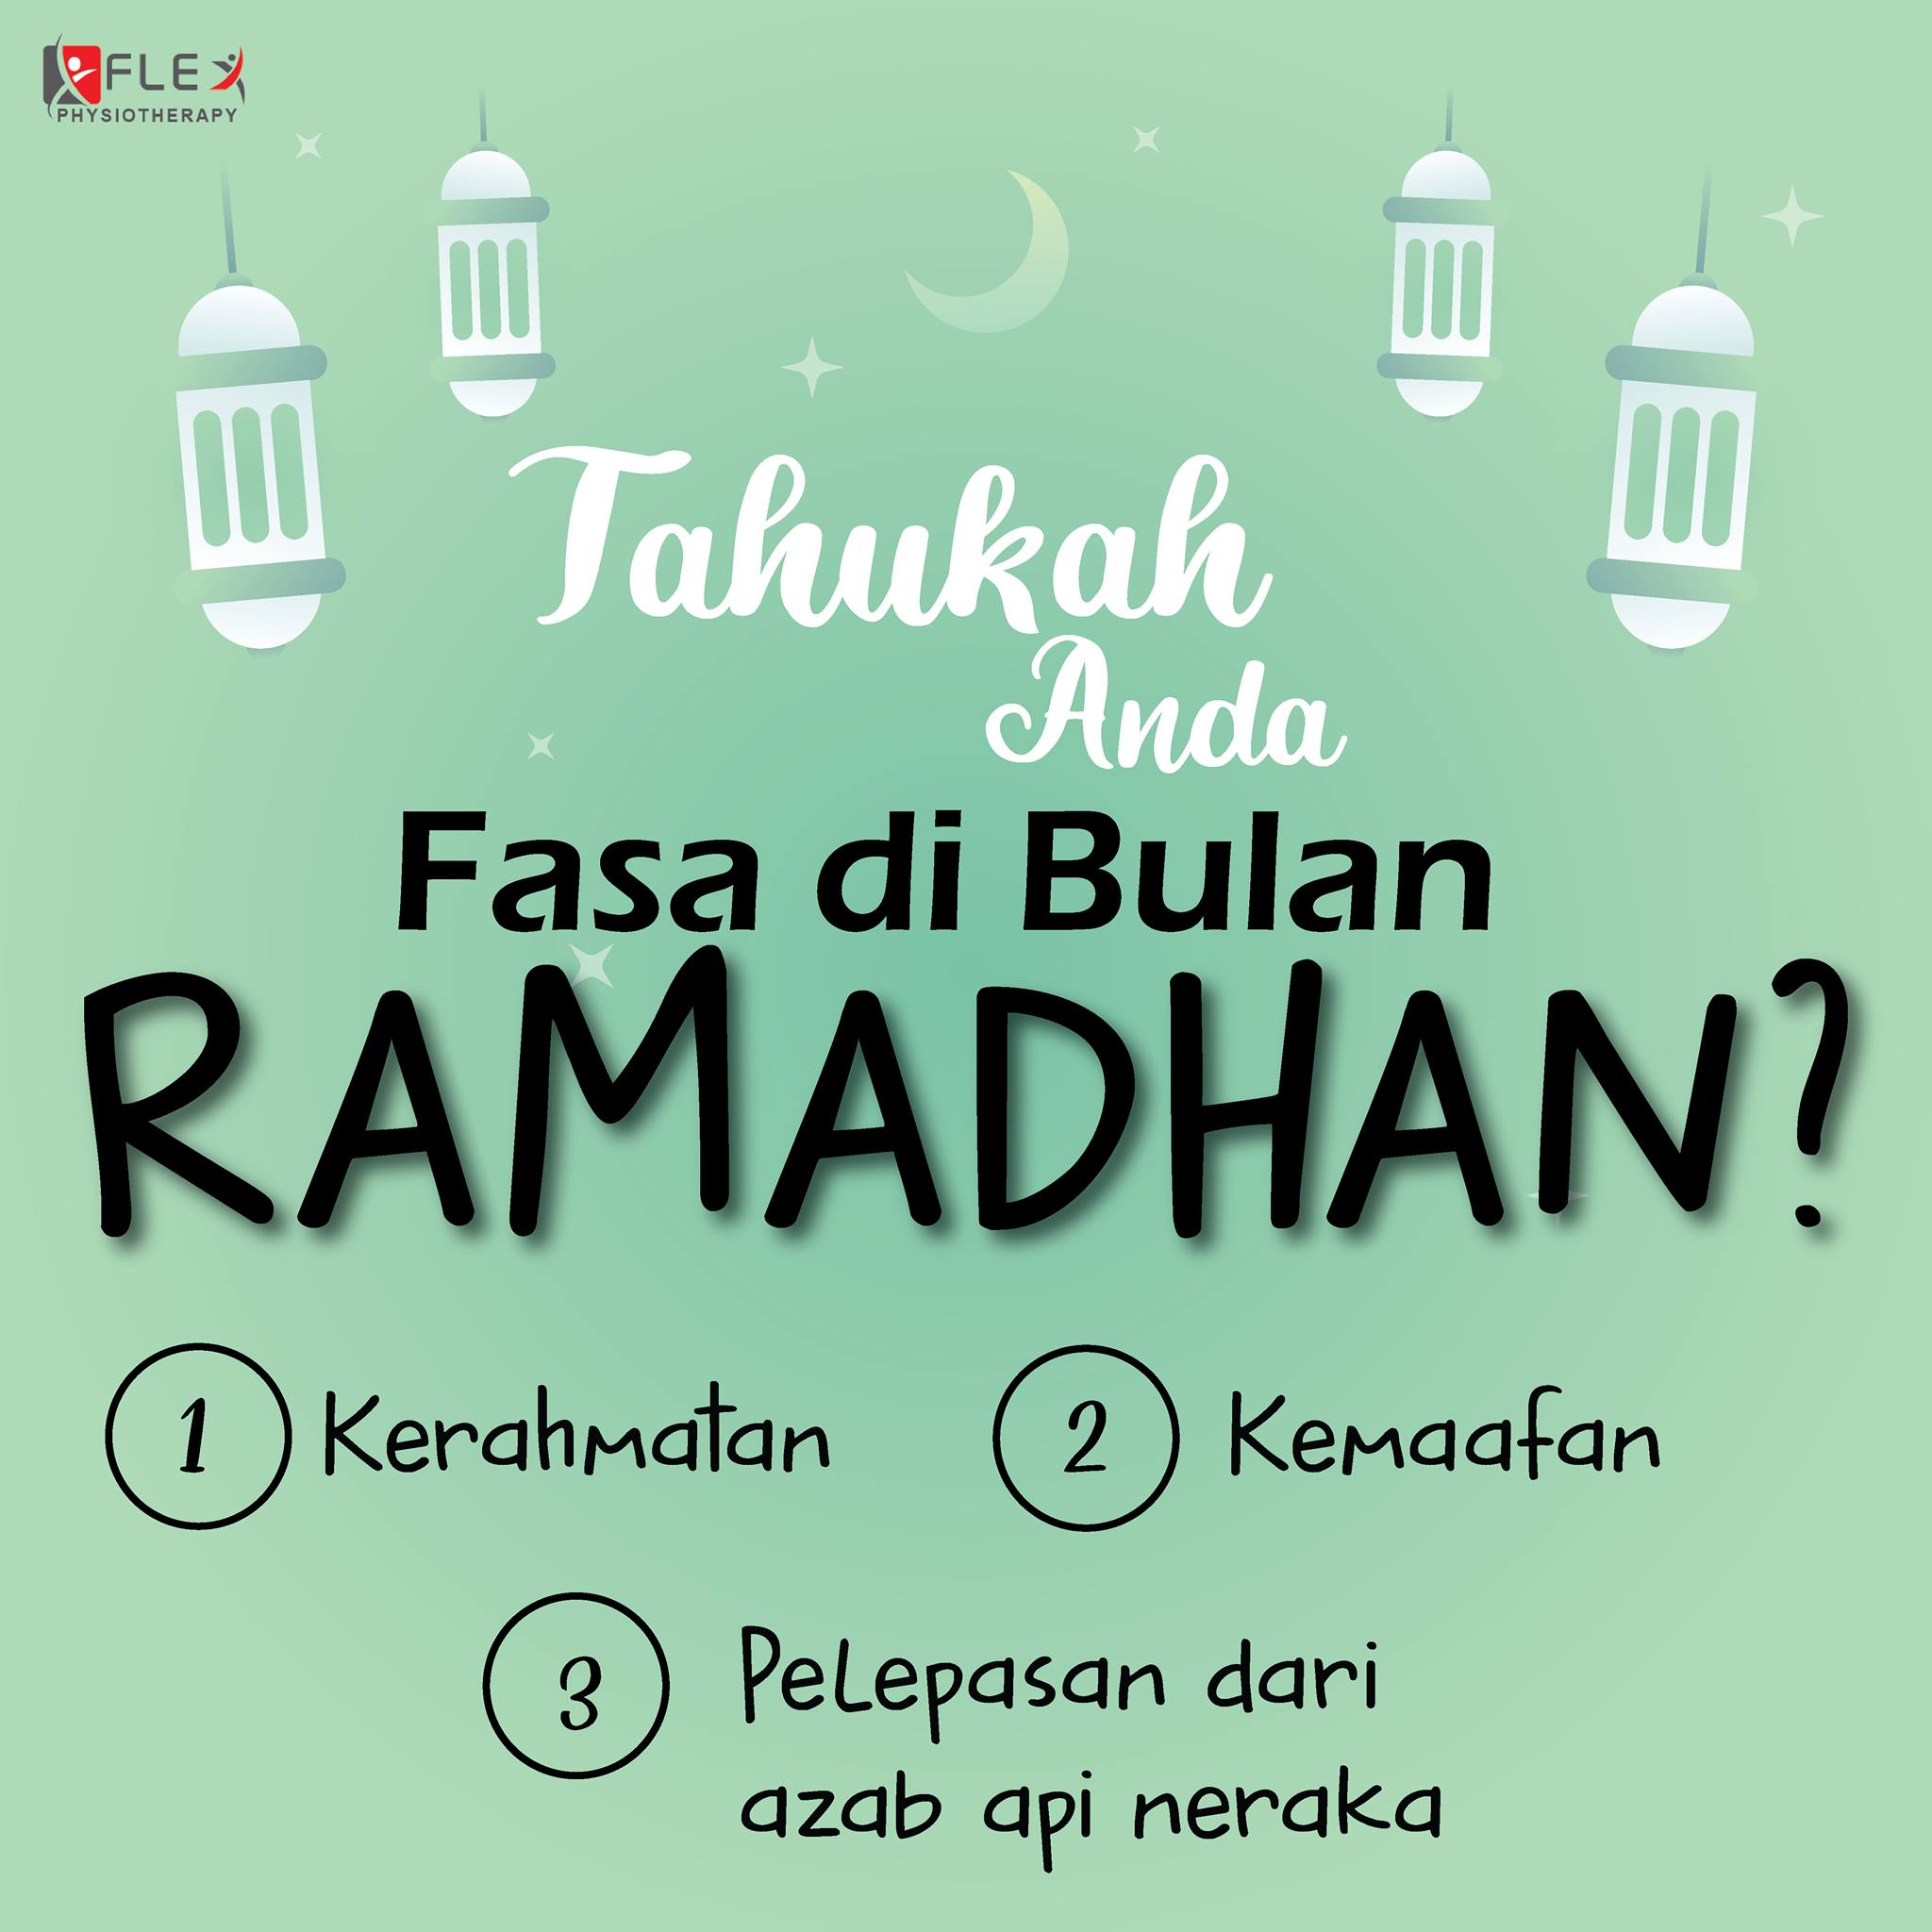 Fasa bulan Ramadan, amal dan aktif